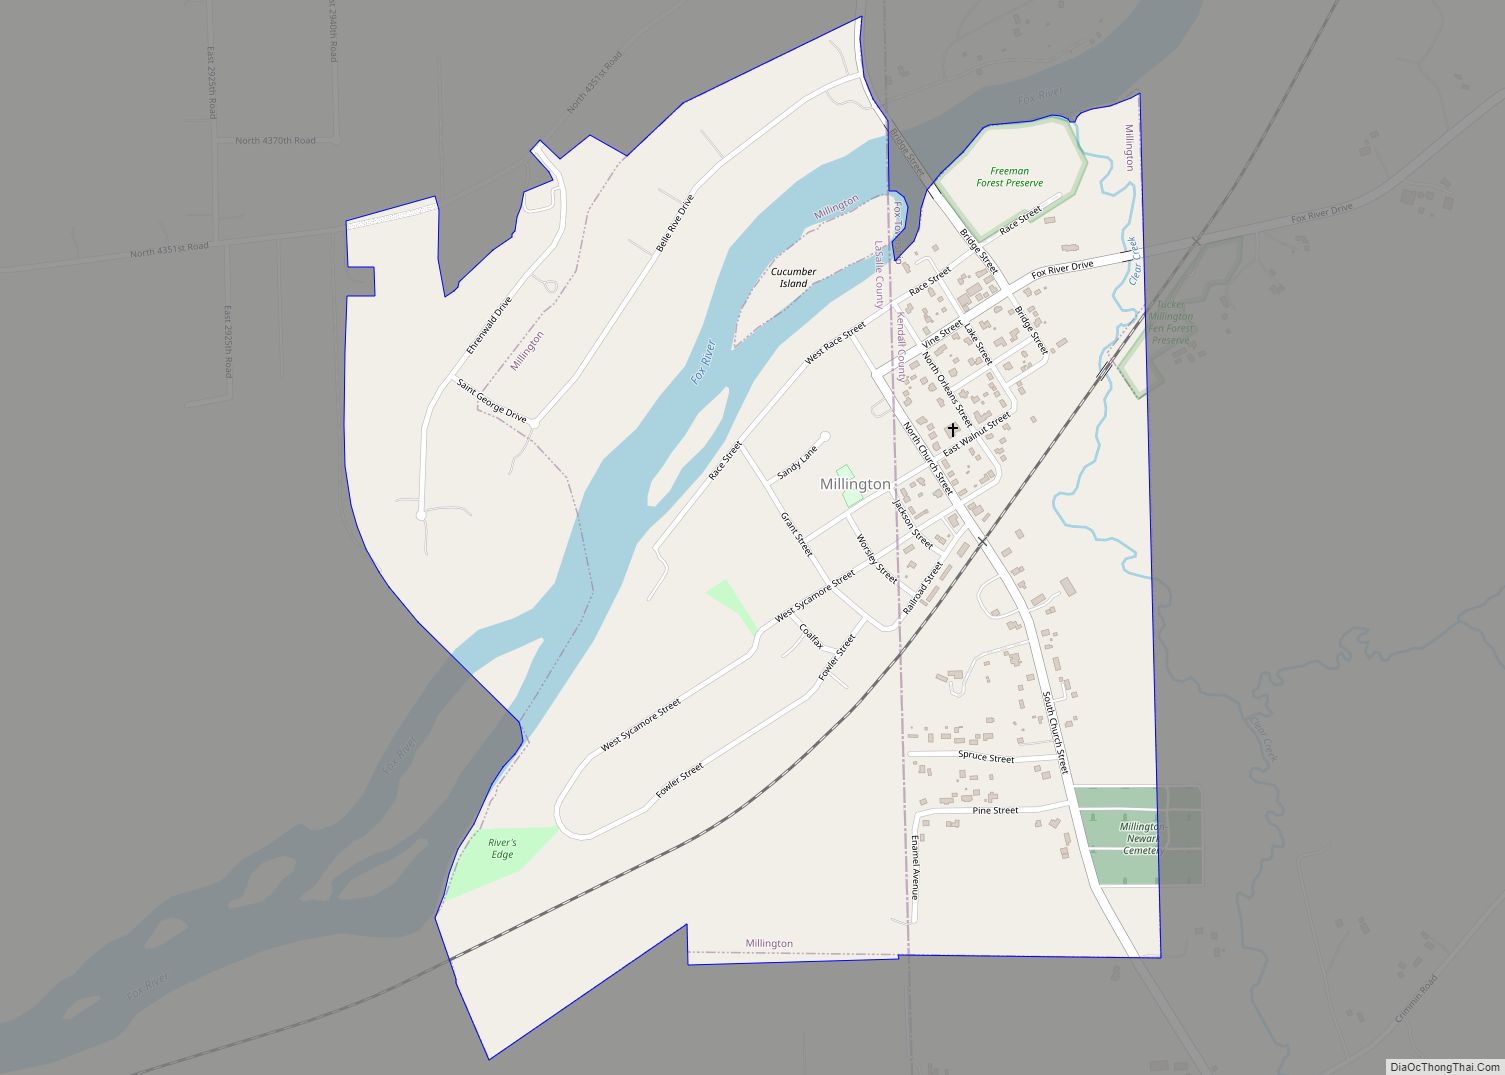 Map of Millington village, Illinois